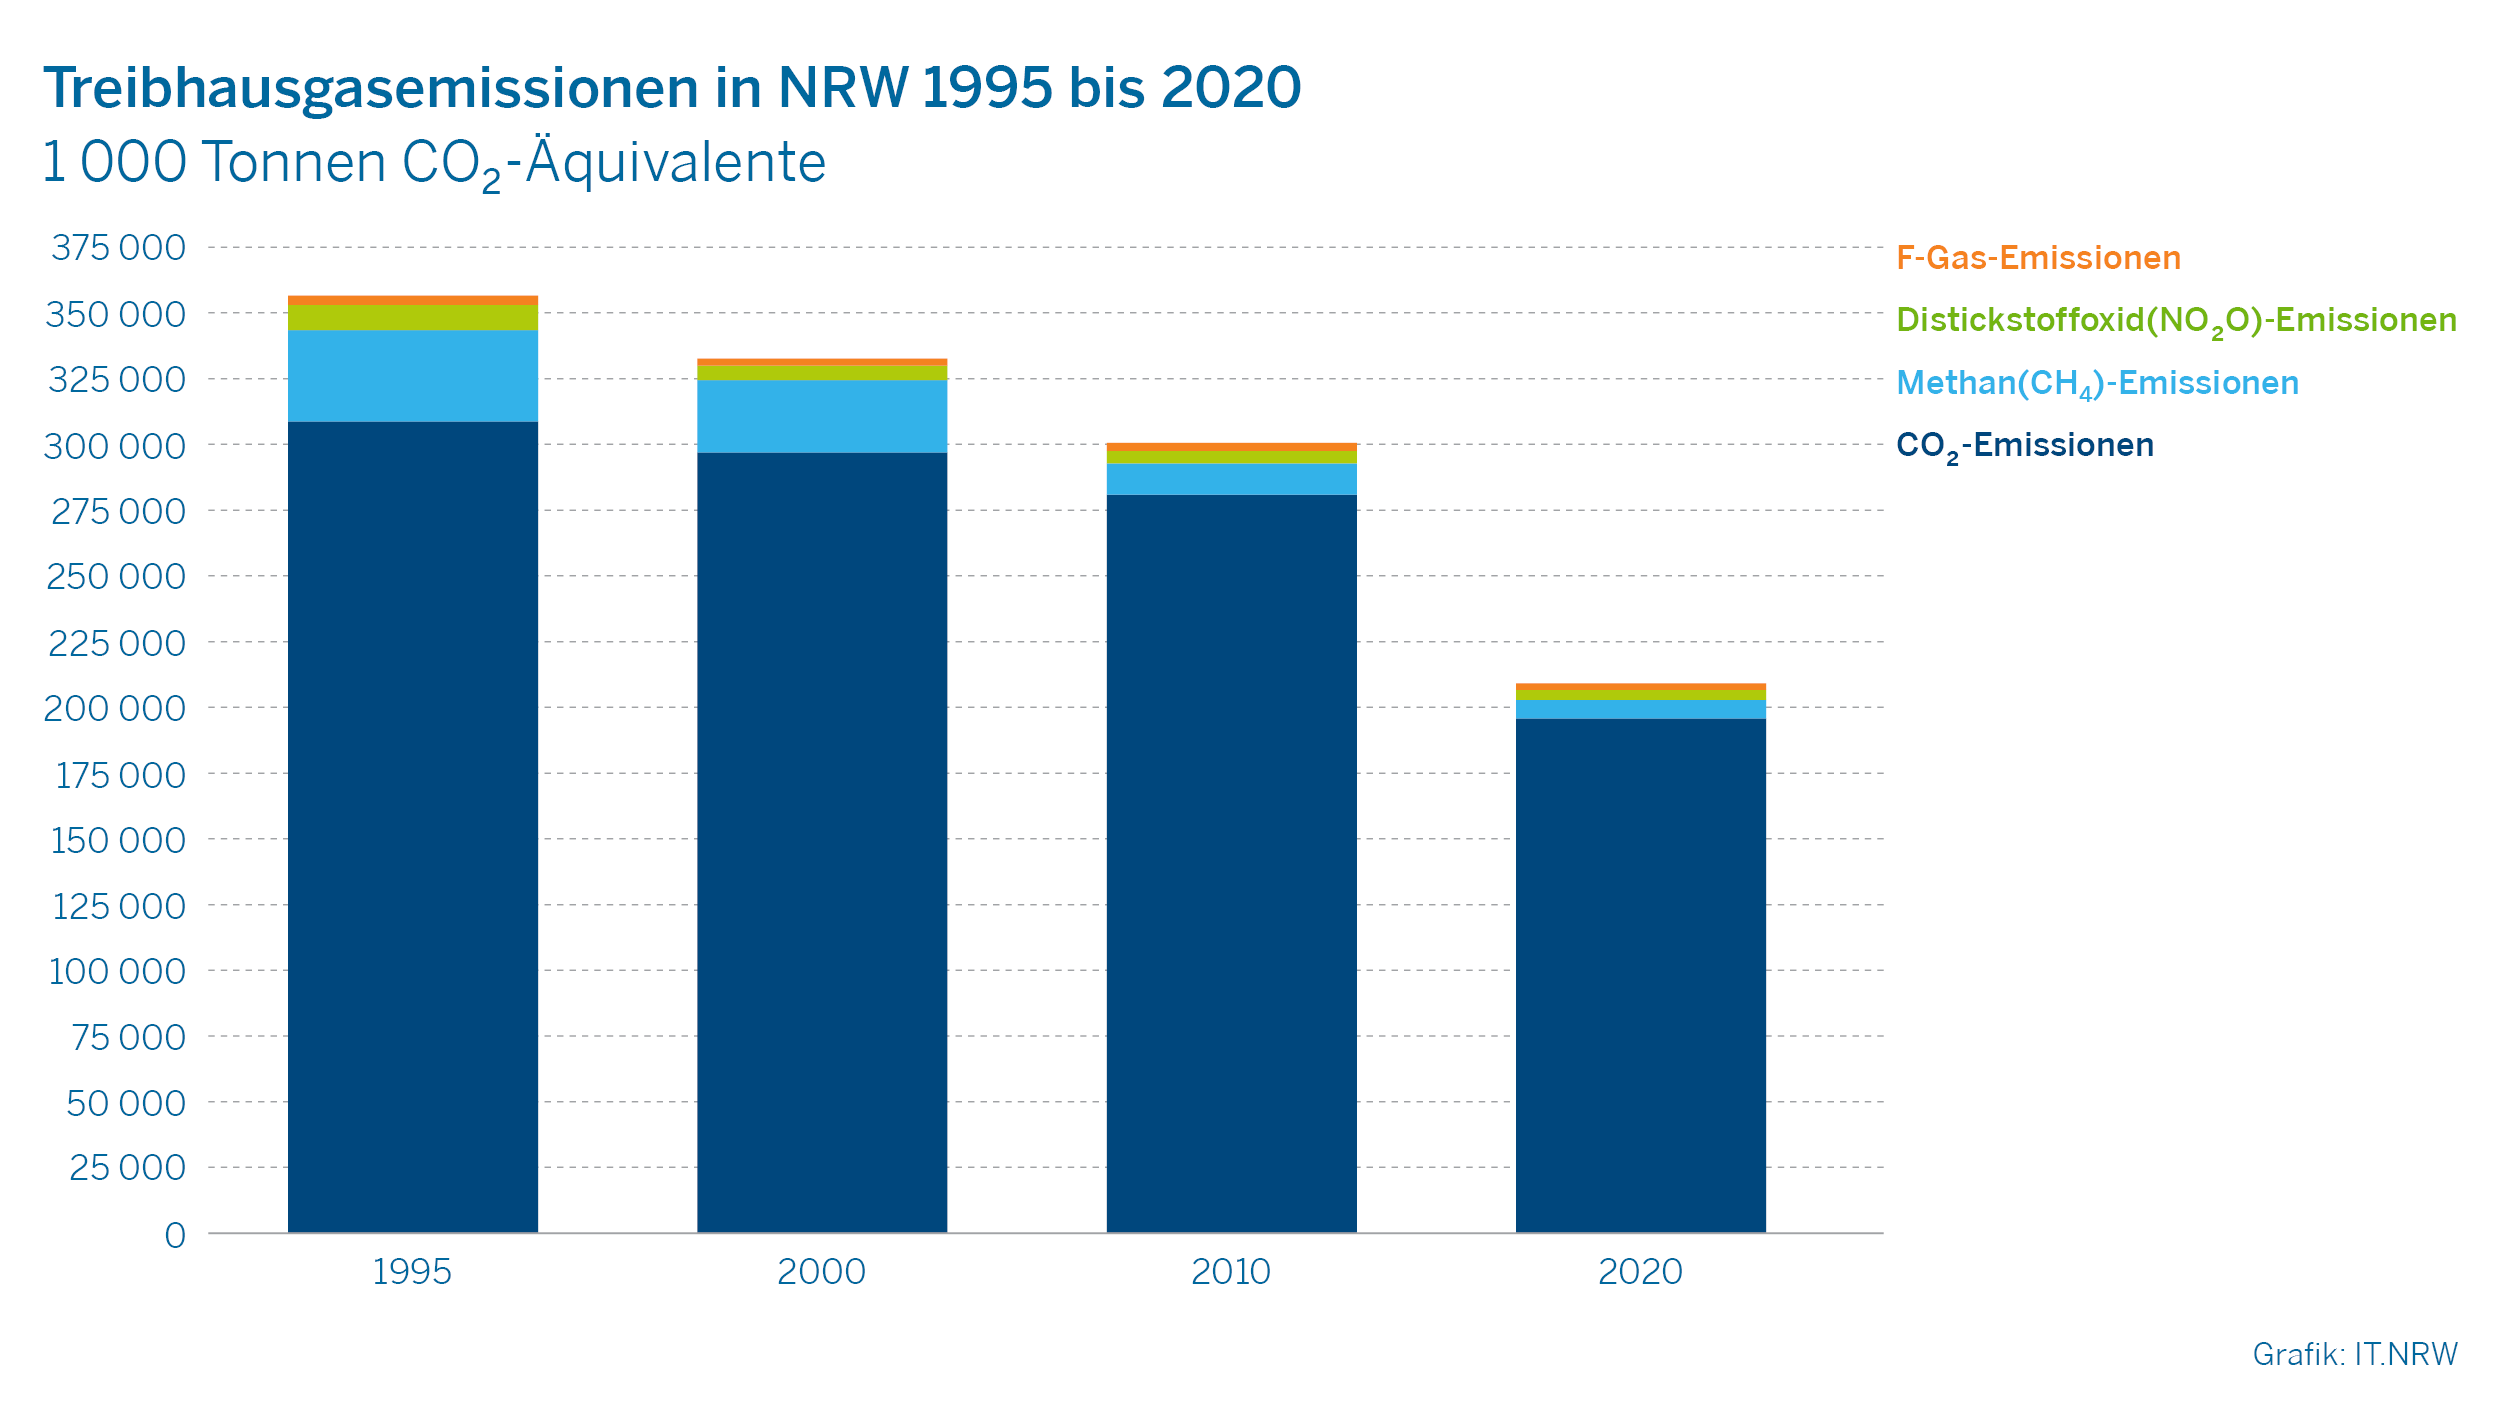 Treibhausgasemissionen in NRW 1995 bis 2020